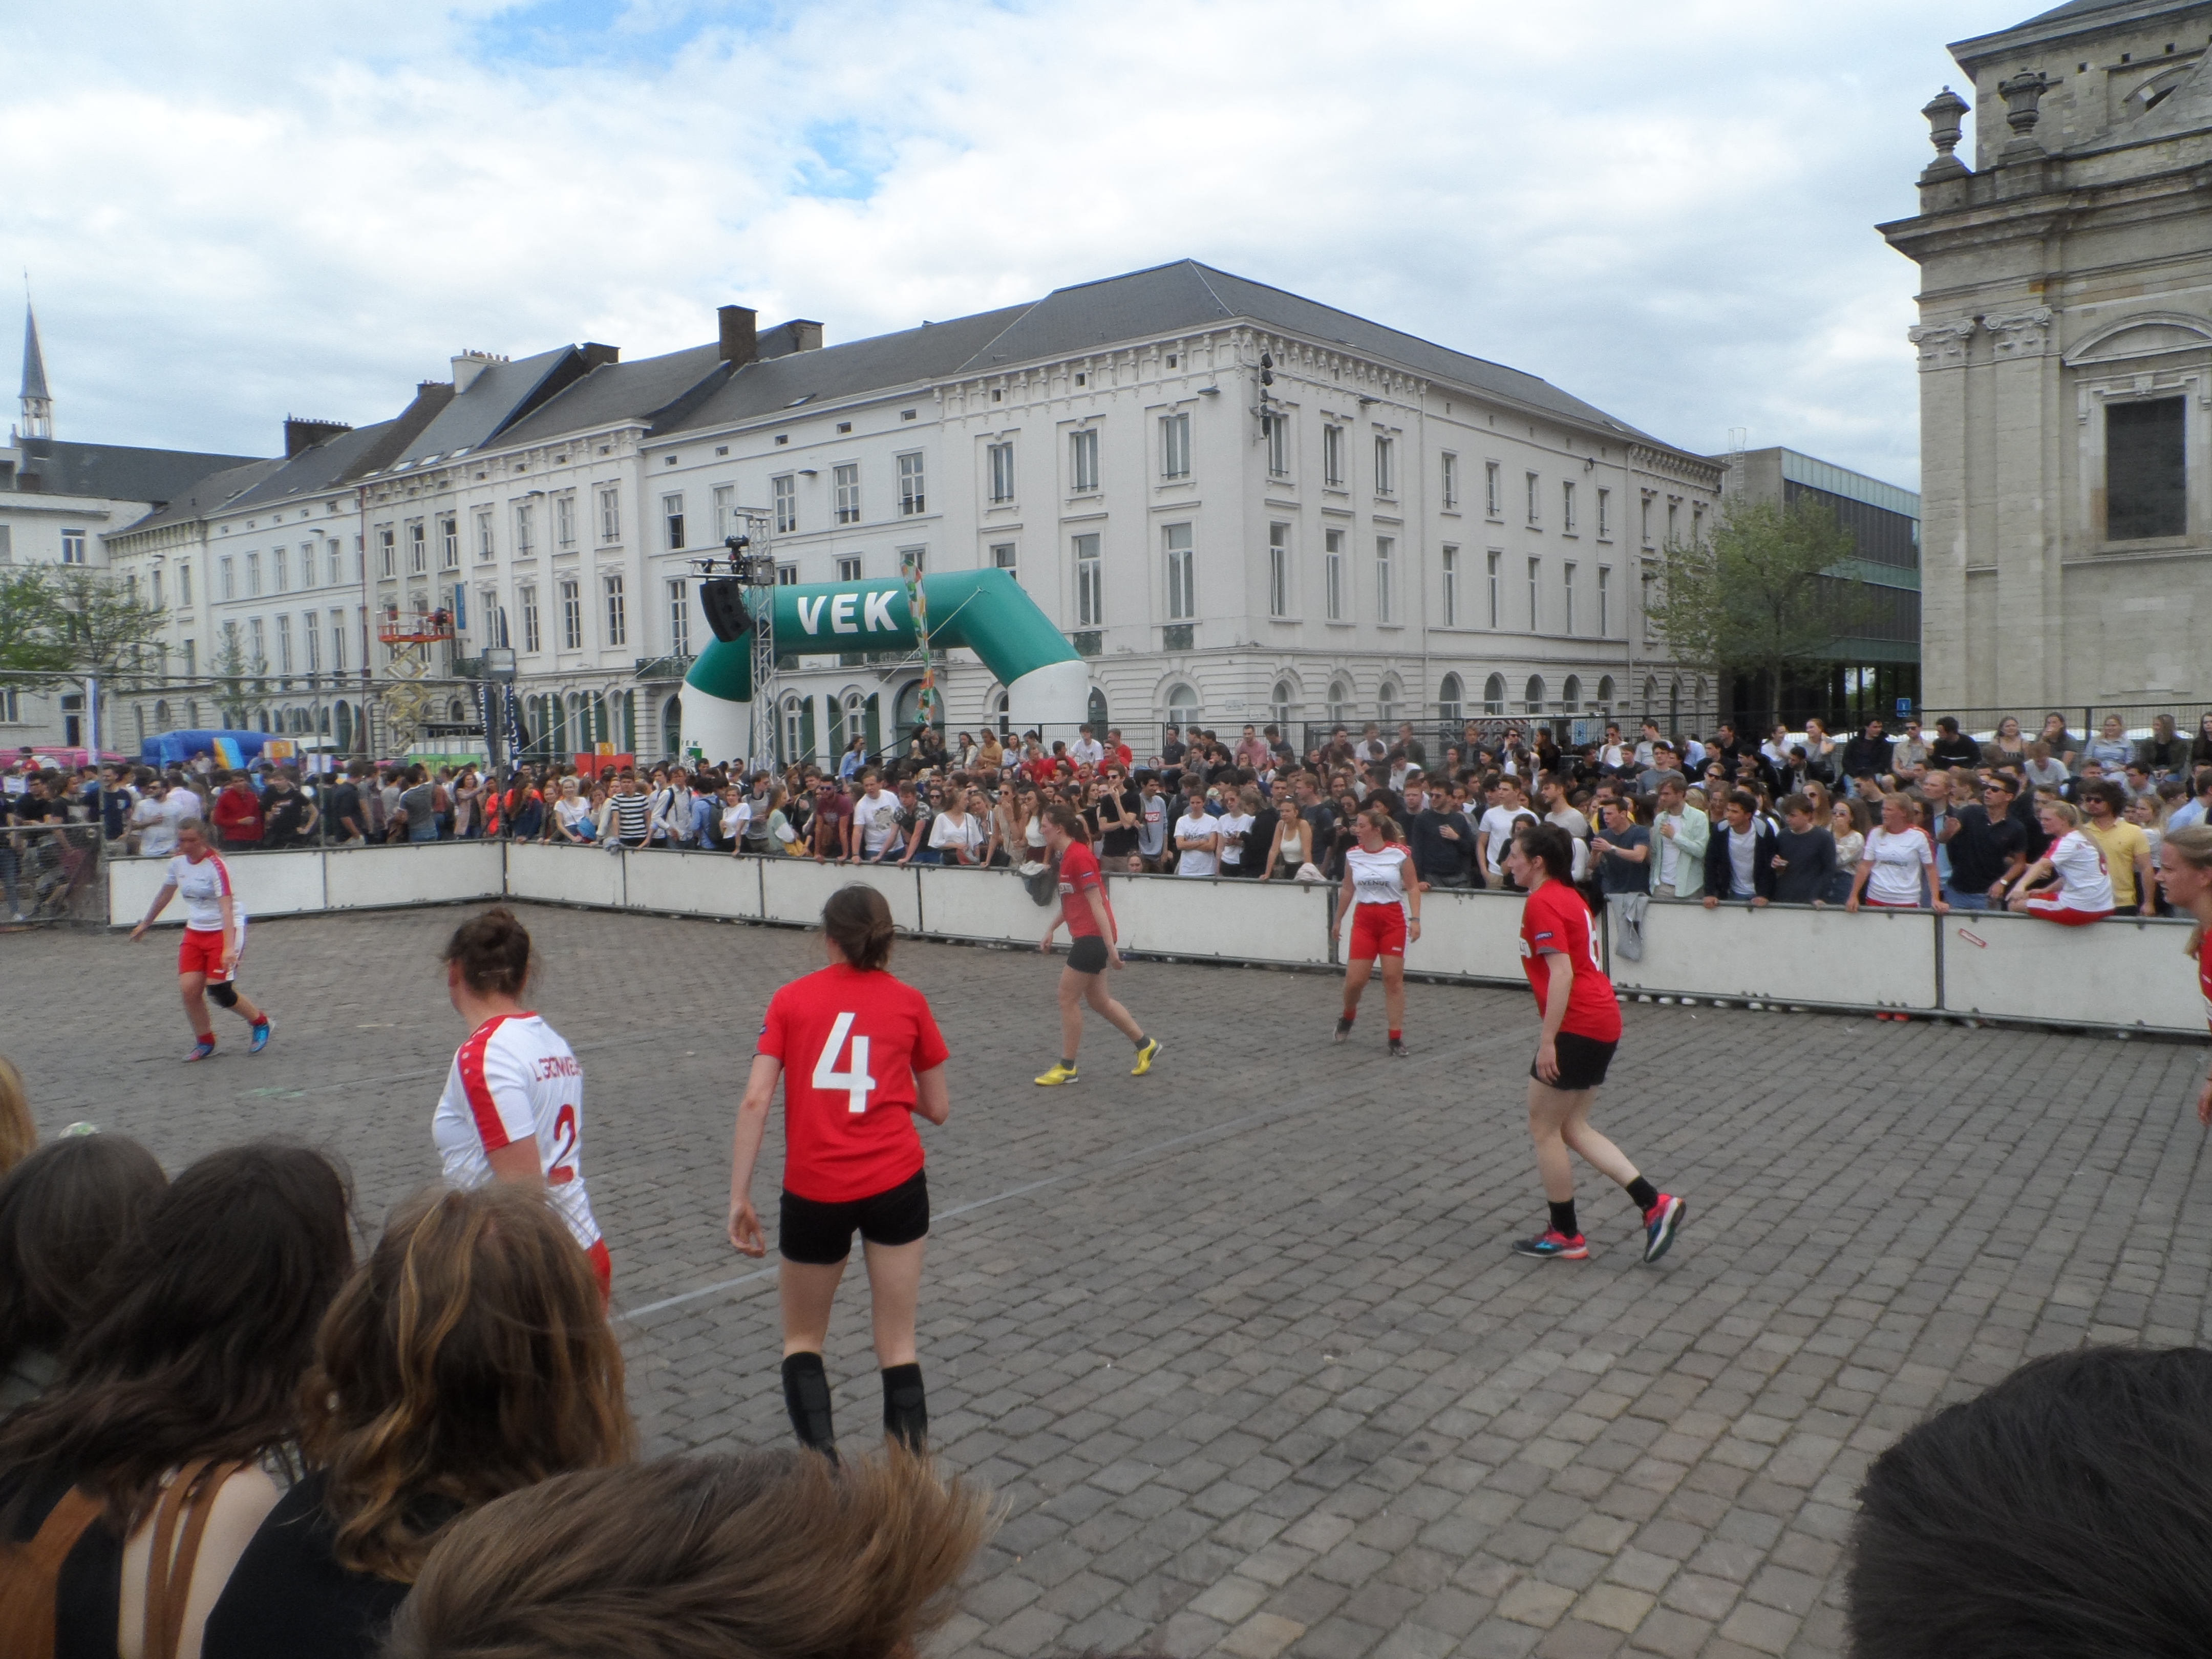 EVENT - Student Street Soccer - Studenten voetballen op Sint-Pietersplein (11)